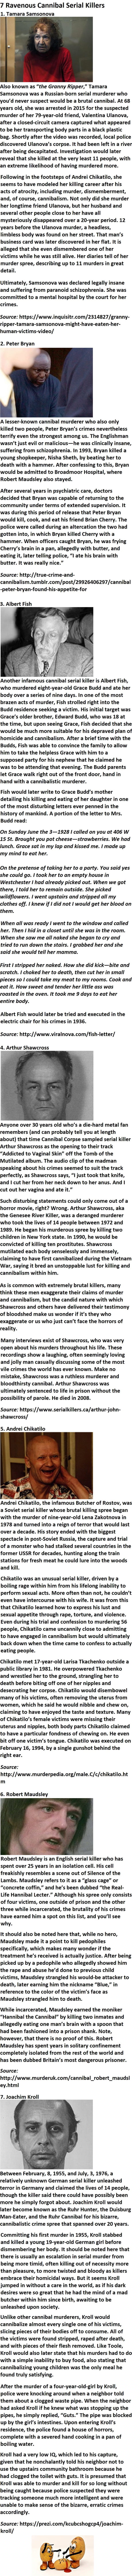 7 Ravenous Cannibal Serial Killers 9gag